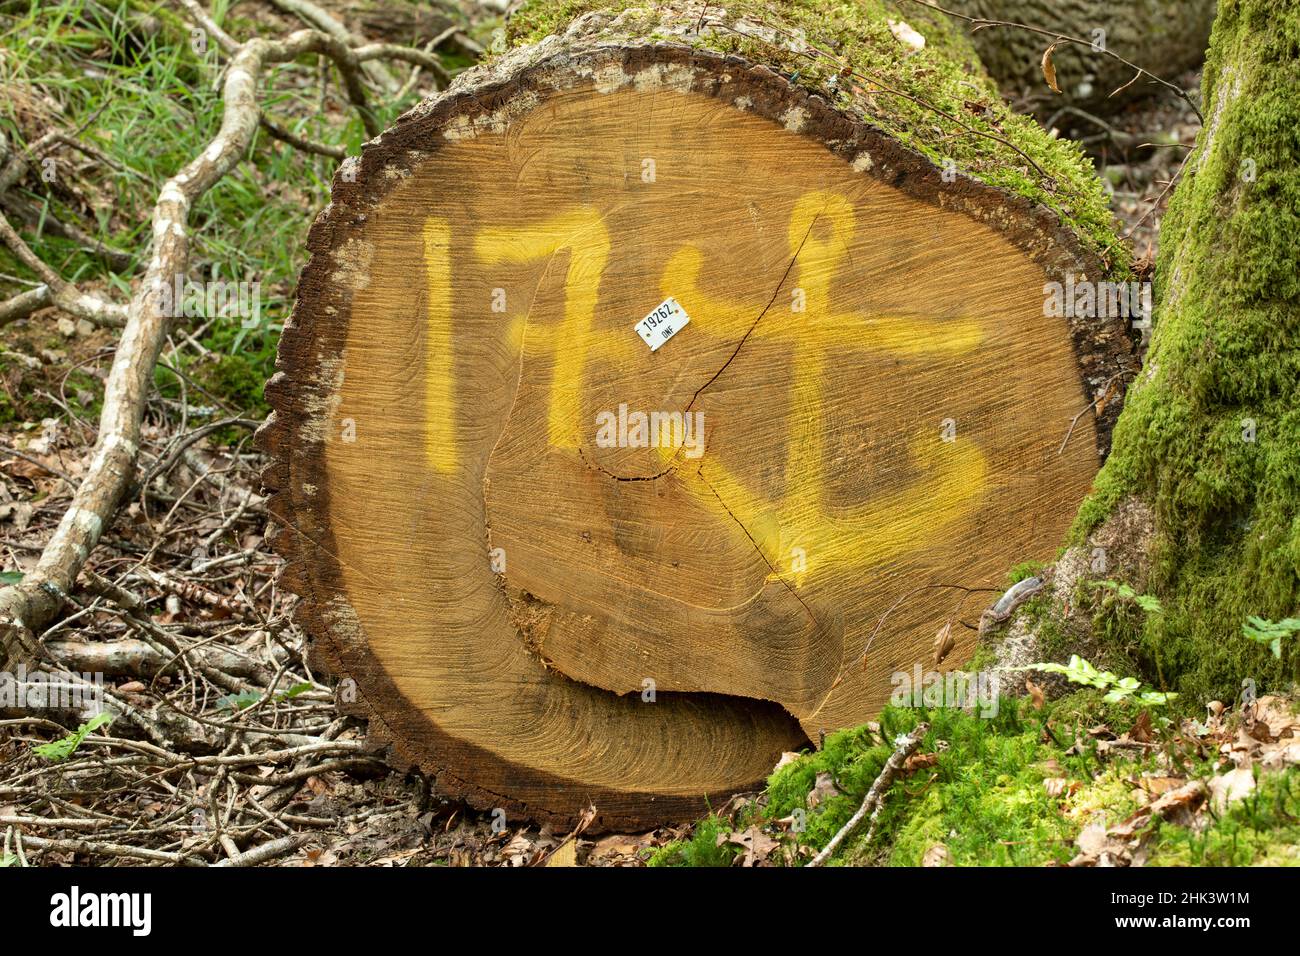 Chêne commun (Quercus robur) marqué d'une ancre pour la construction navale, forêt de Cranou, Hanvec, Finistère, France Banque D'Images